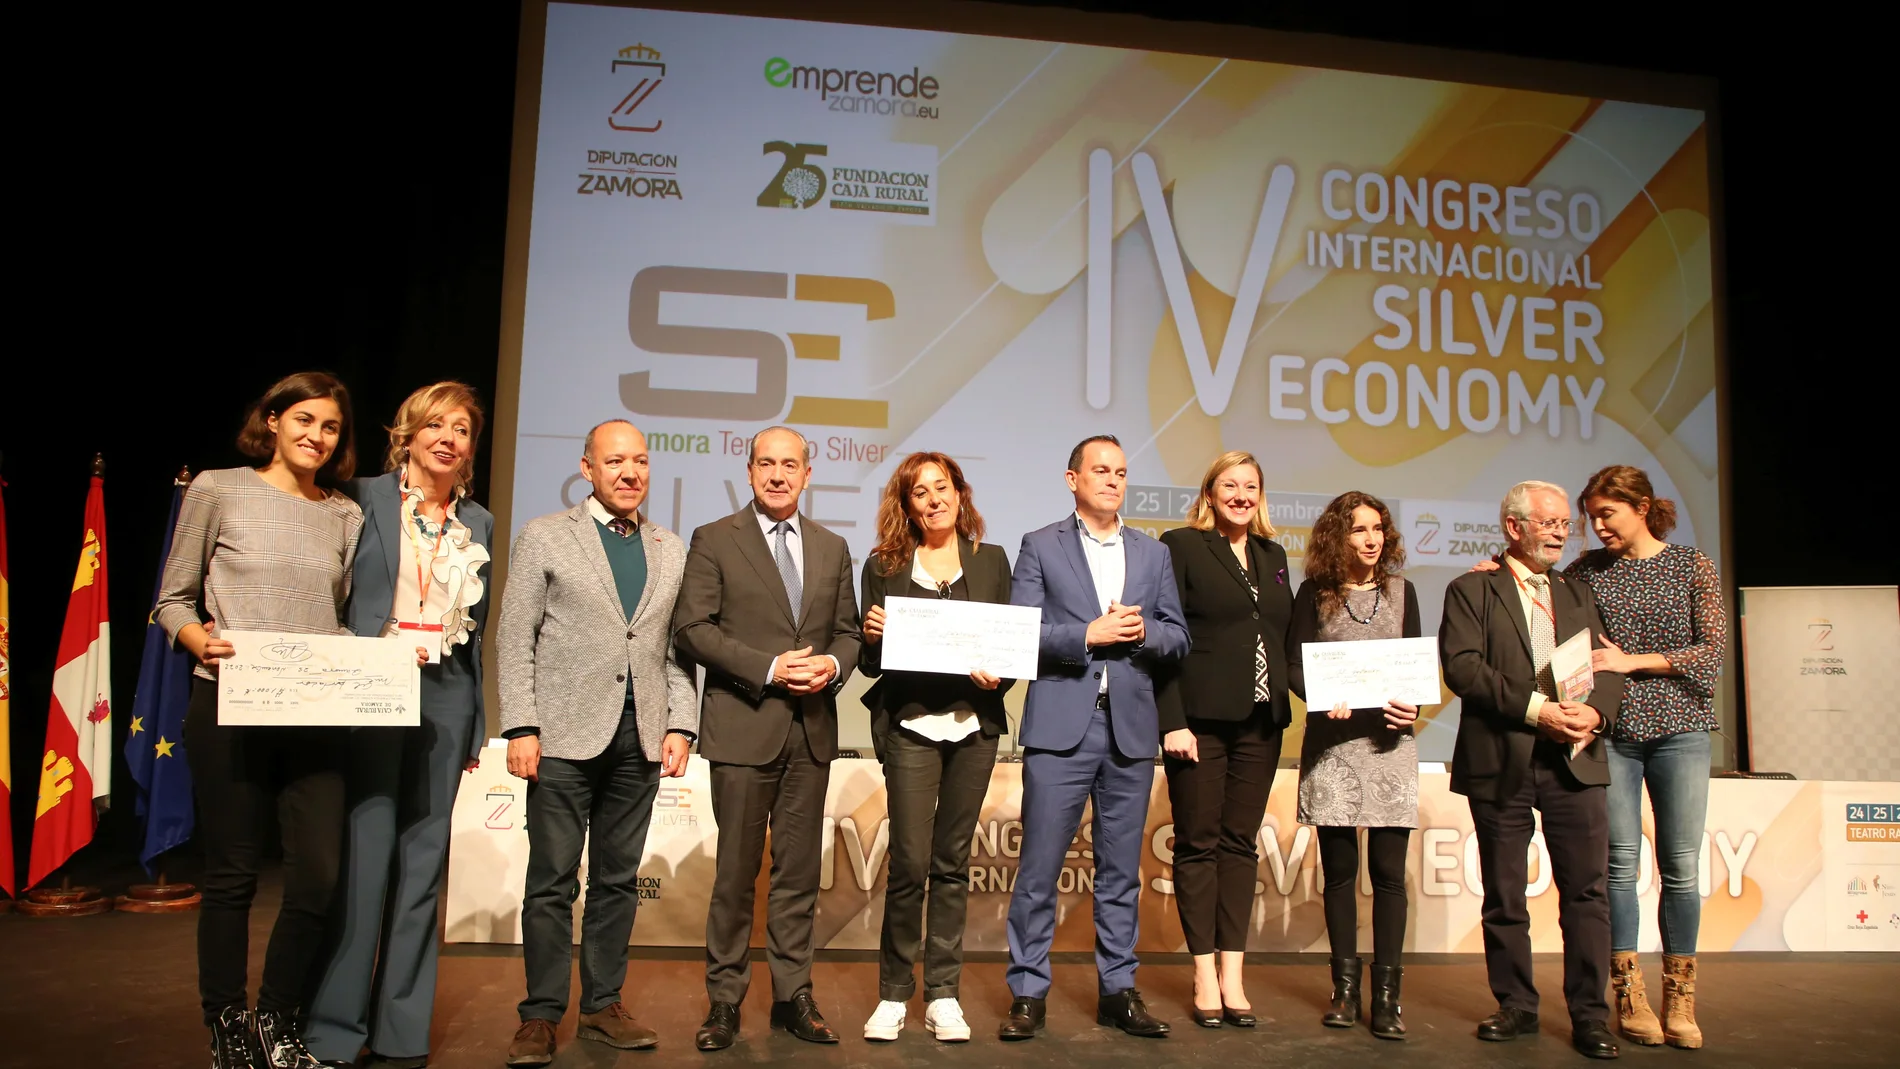 Clausura del IV Congredo Internacional Silver Economy con la presencia de Isabel Blanco y Francisco José requejo, en la imagen con los premiados y patrocinadores